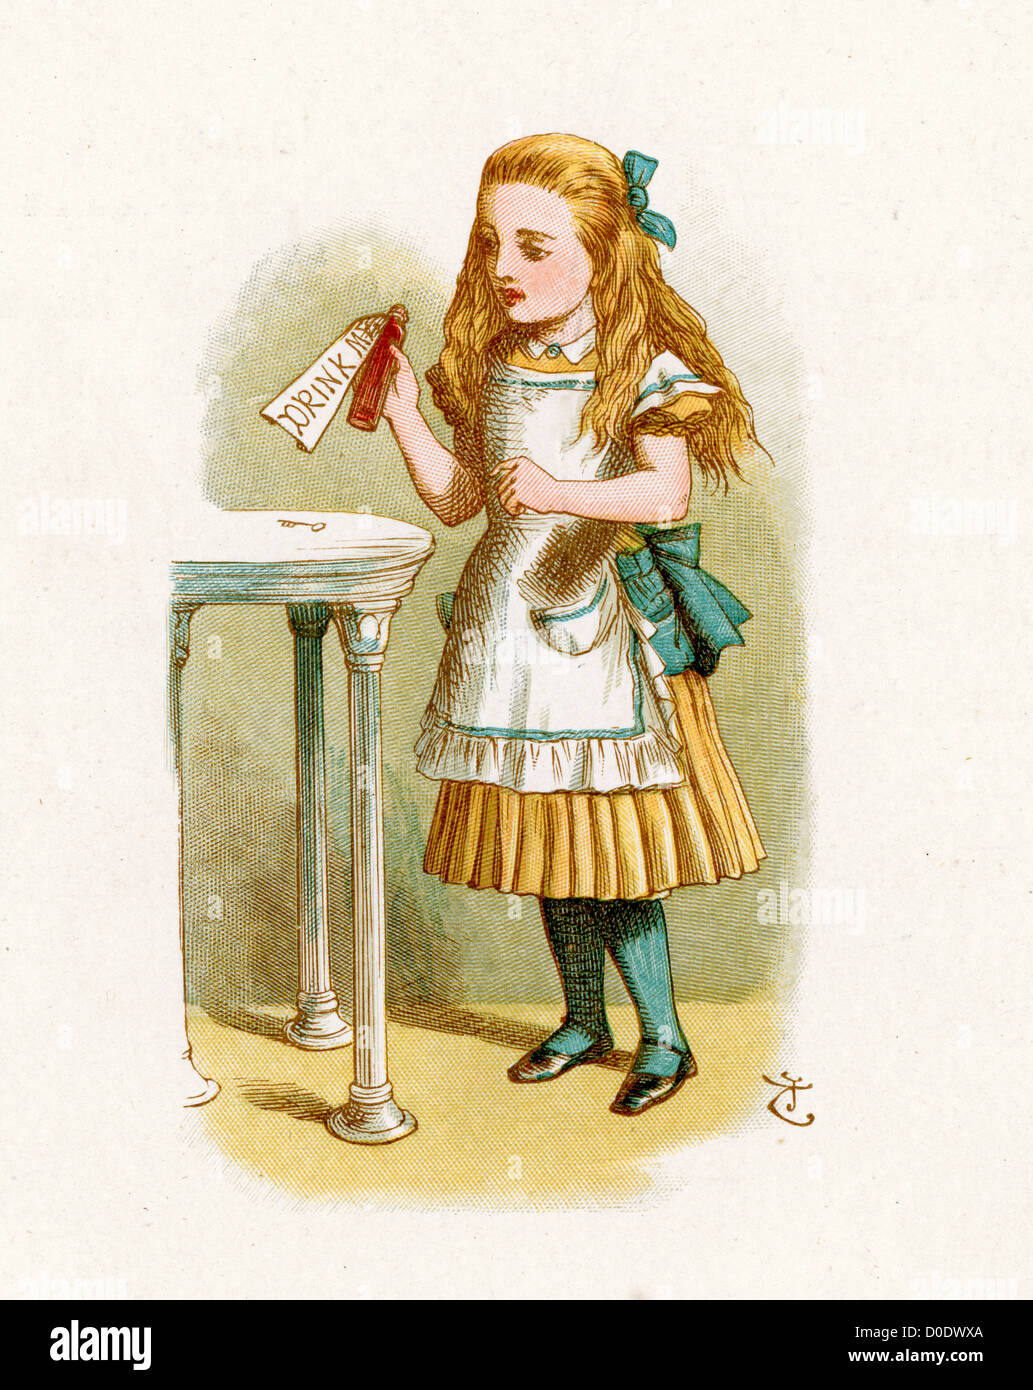 Alice mit der Flasche gekennzeichnet Drink Me, von Lewis Carroll Geschichte  Alice im Wunderland, Illustration von Sir John Tenniel 1871 Stockfotografie  - Alamy